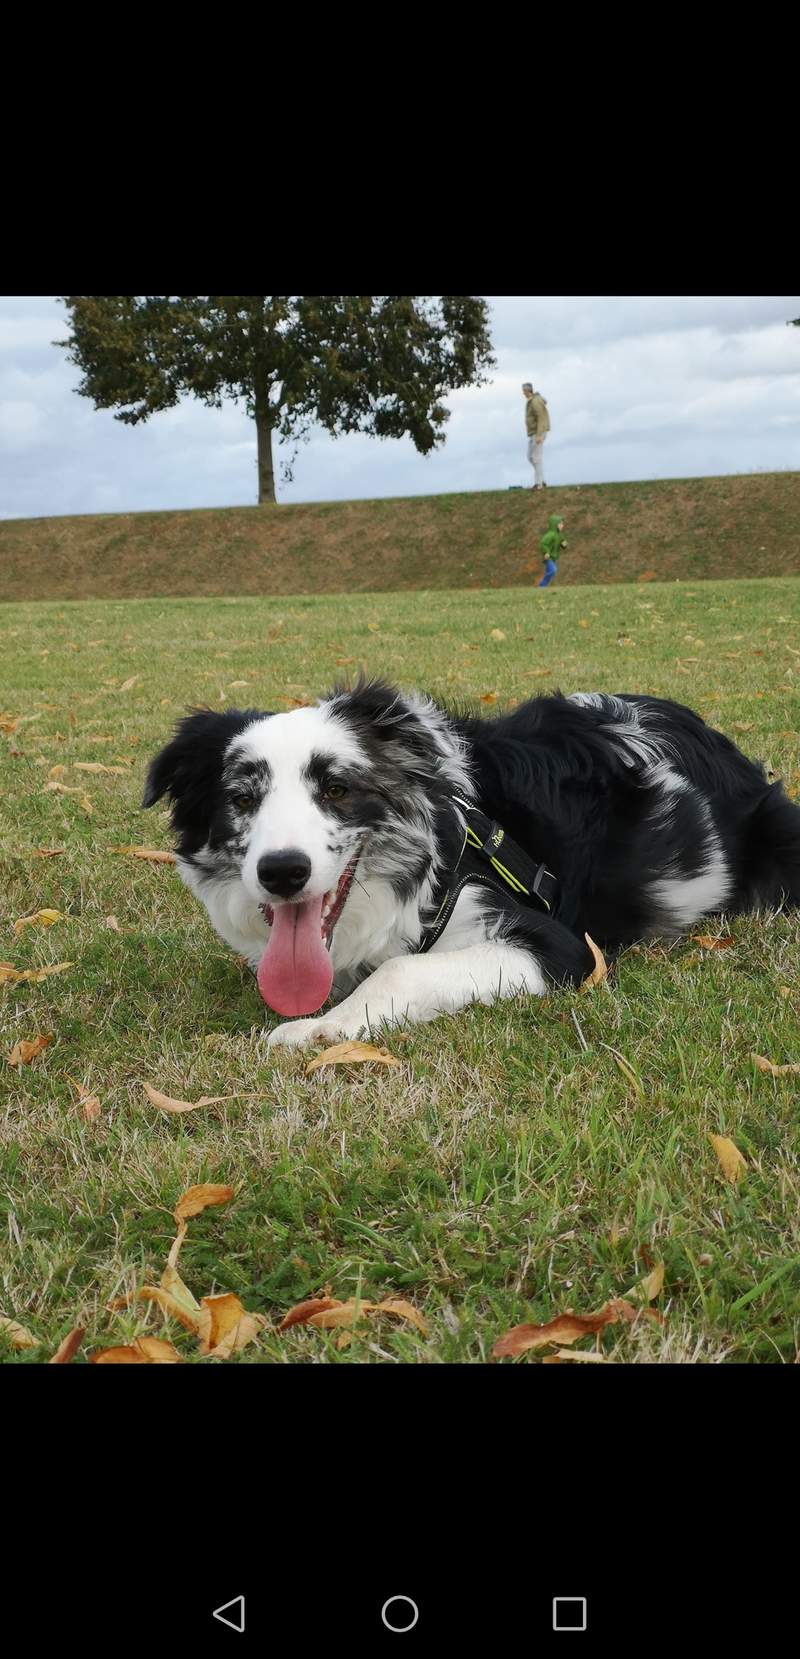 En svartvit hund som ligger på gräset på ett fält.